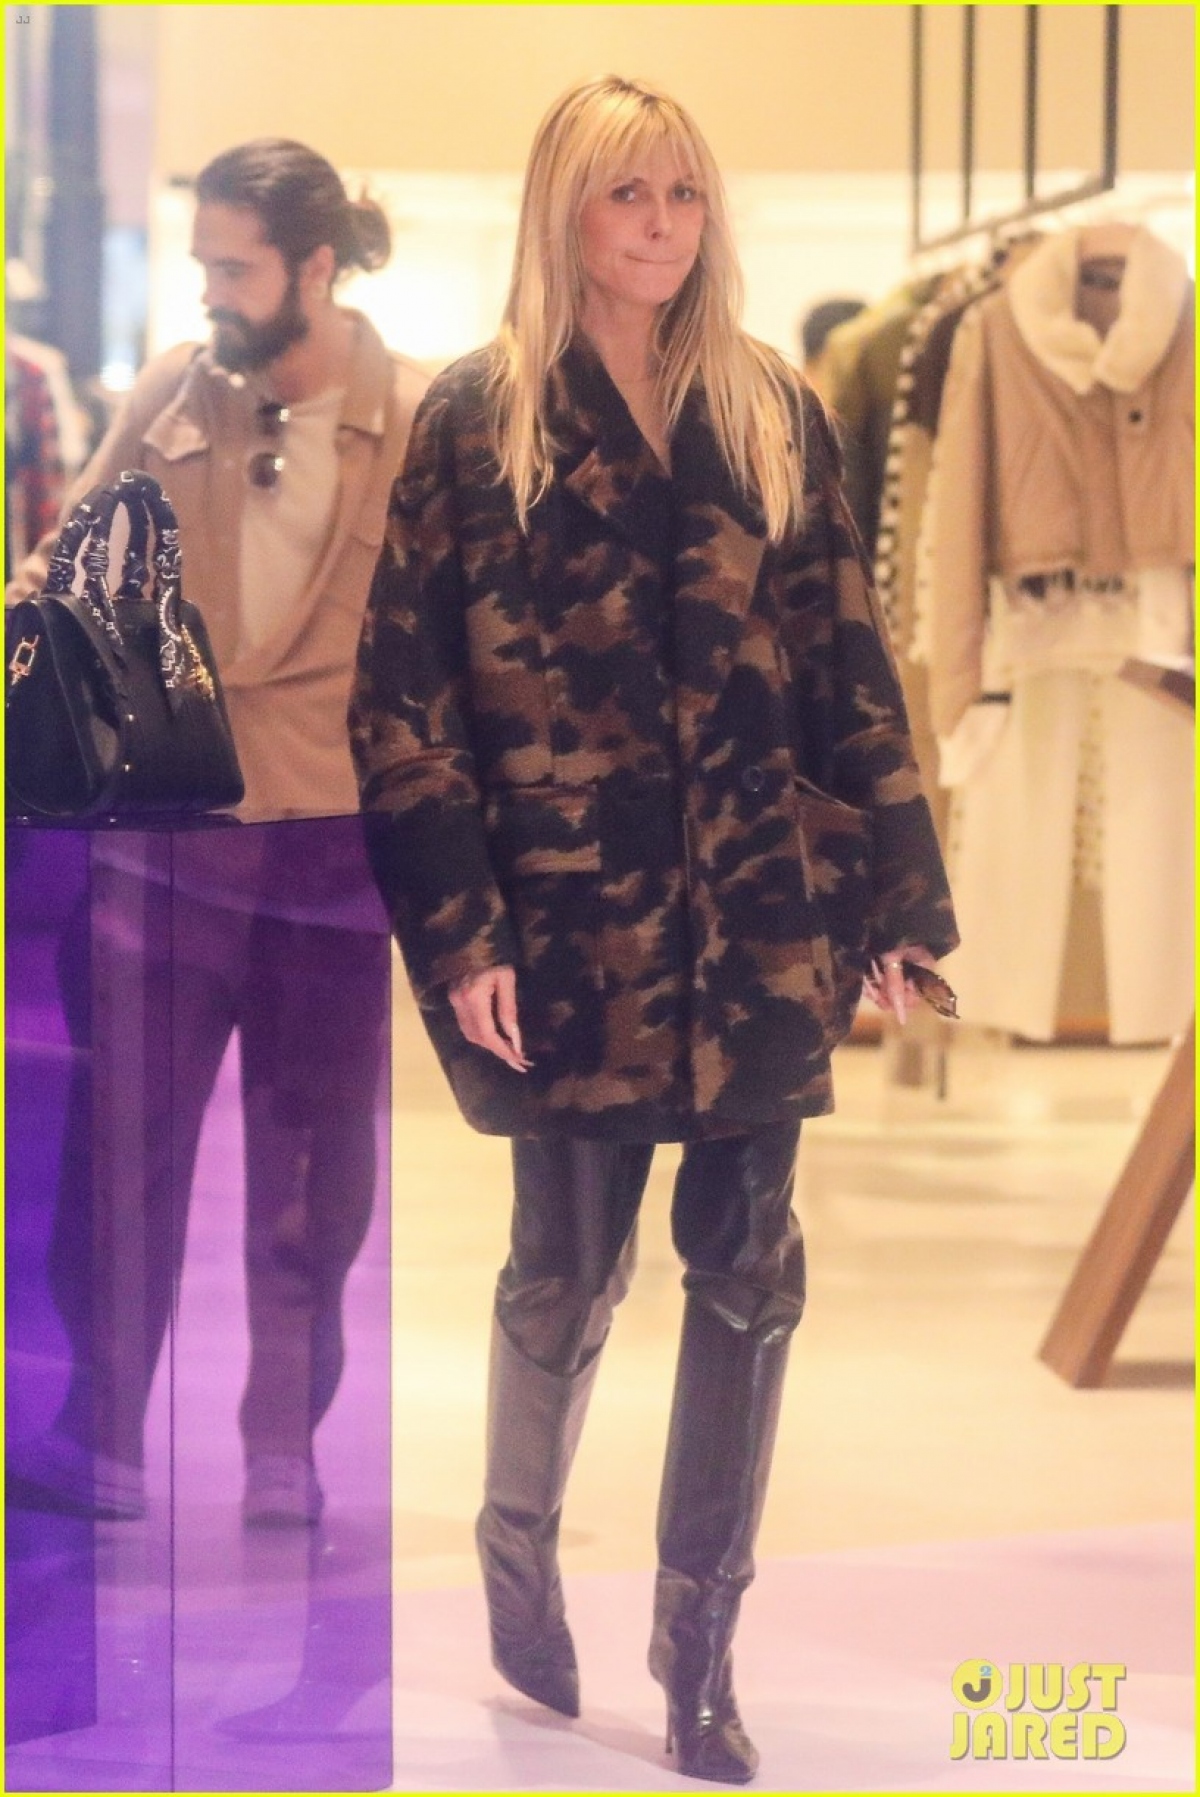 Siêu mẫu Heidi Klum diện đồ sành điệu, tình cảm nắm tay chồng trẻ đi mua sắm - Ảnh 5.